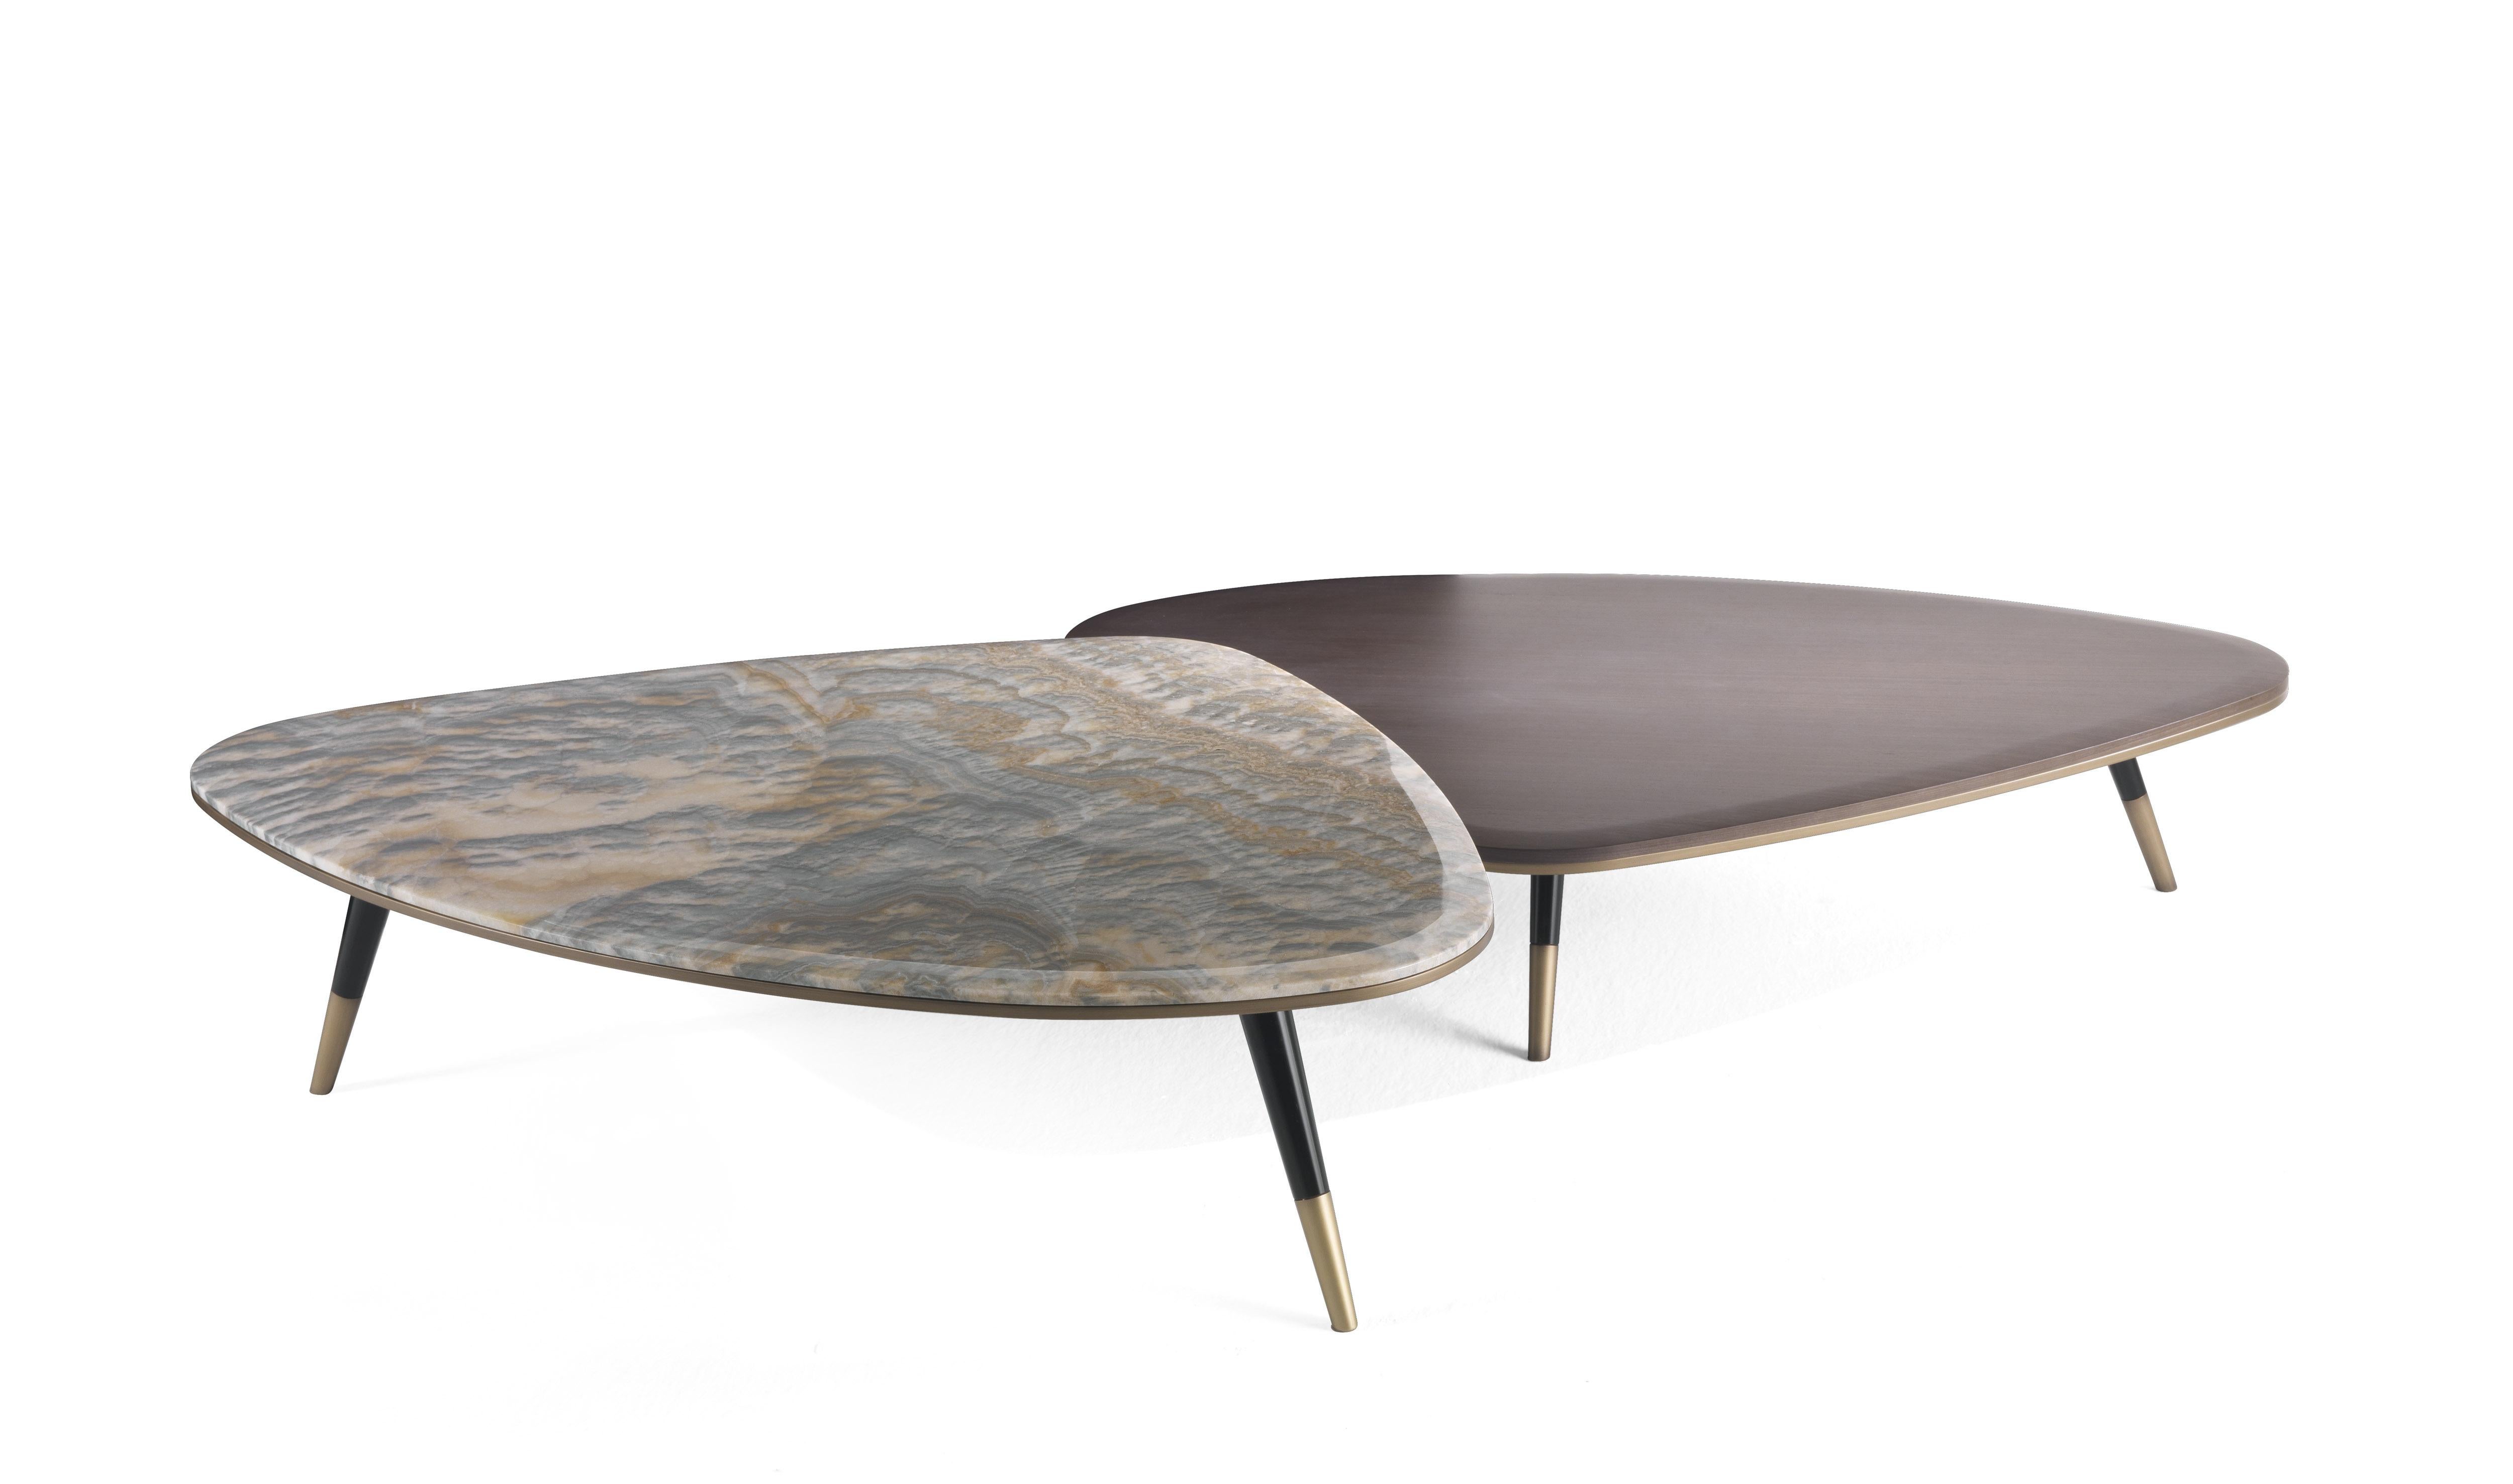 Die von den 1950er Jahren inspirierten Tische Camberwell zeichnen sich durch schräge Beine, Messingkappen und -profile sowie eine geschwungene Platte mit unregelmäßiger Form aus. Dank der verschiedenen Höhen und der für die Platte verfügbaren